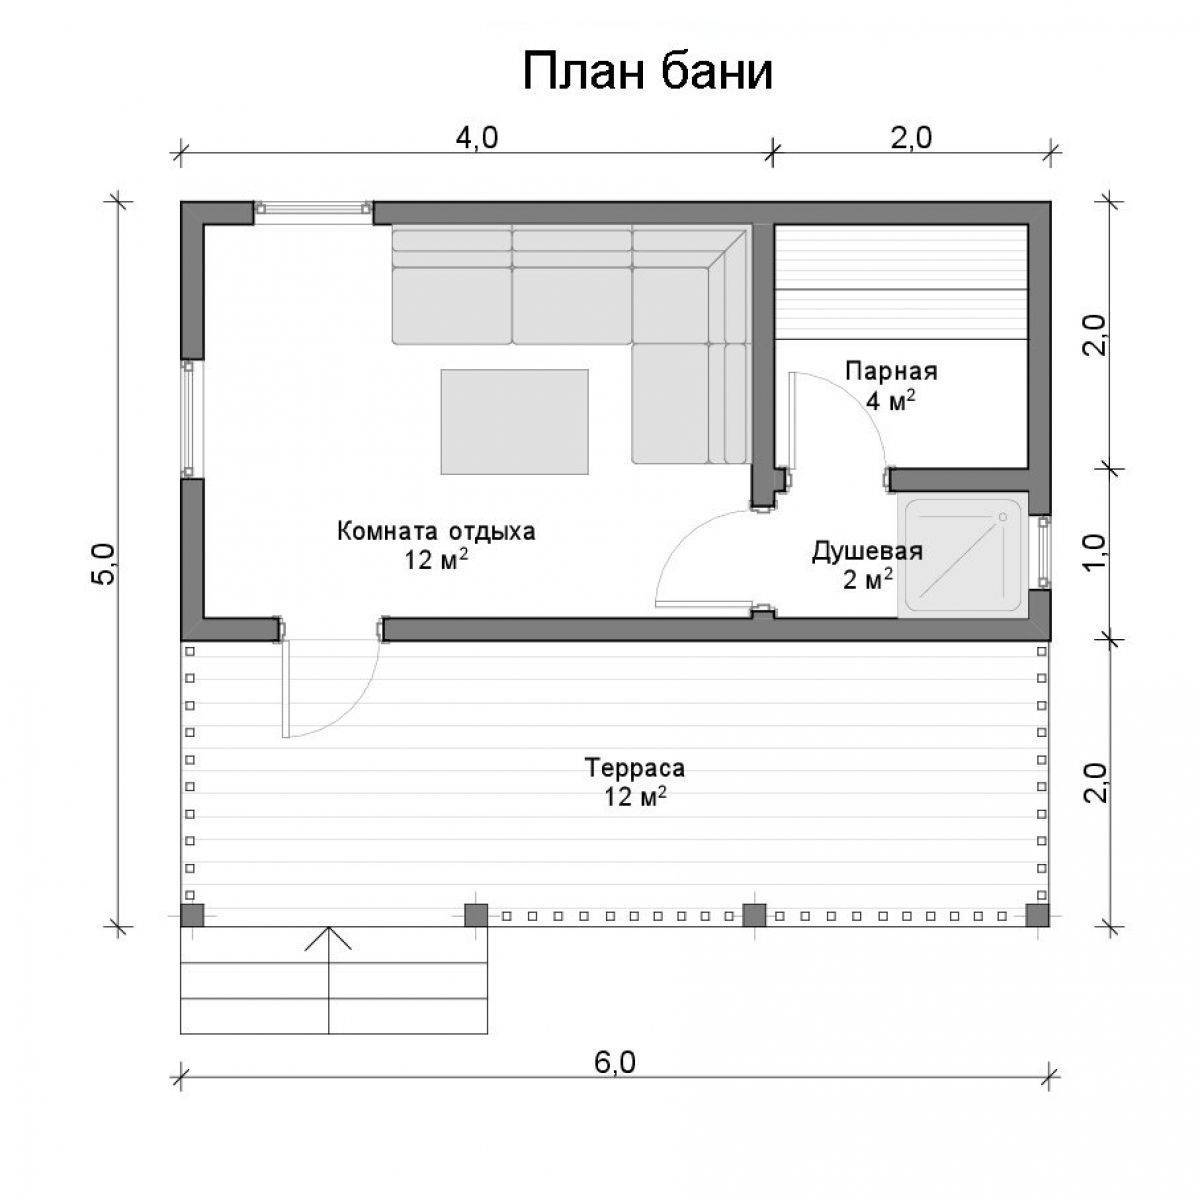 Планировка бани: обзор проектов, размеры, материалы, готовые дизайн-проекты бани 4х5, 3х4, 4х6 и другие